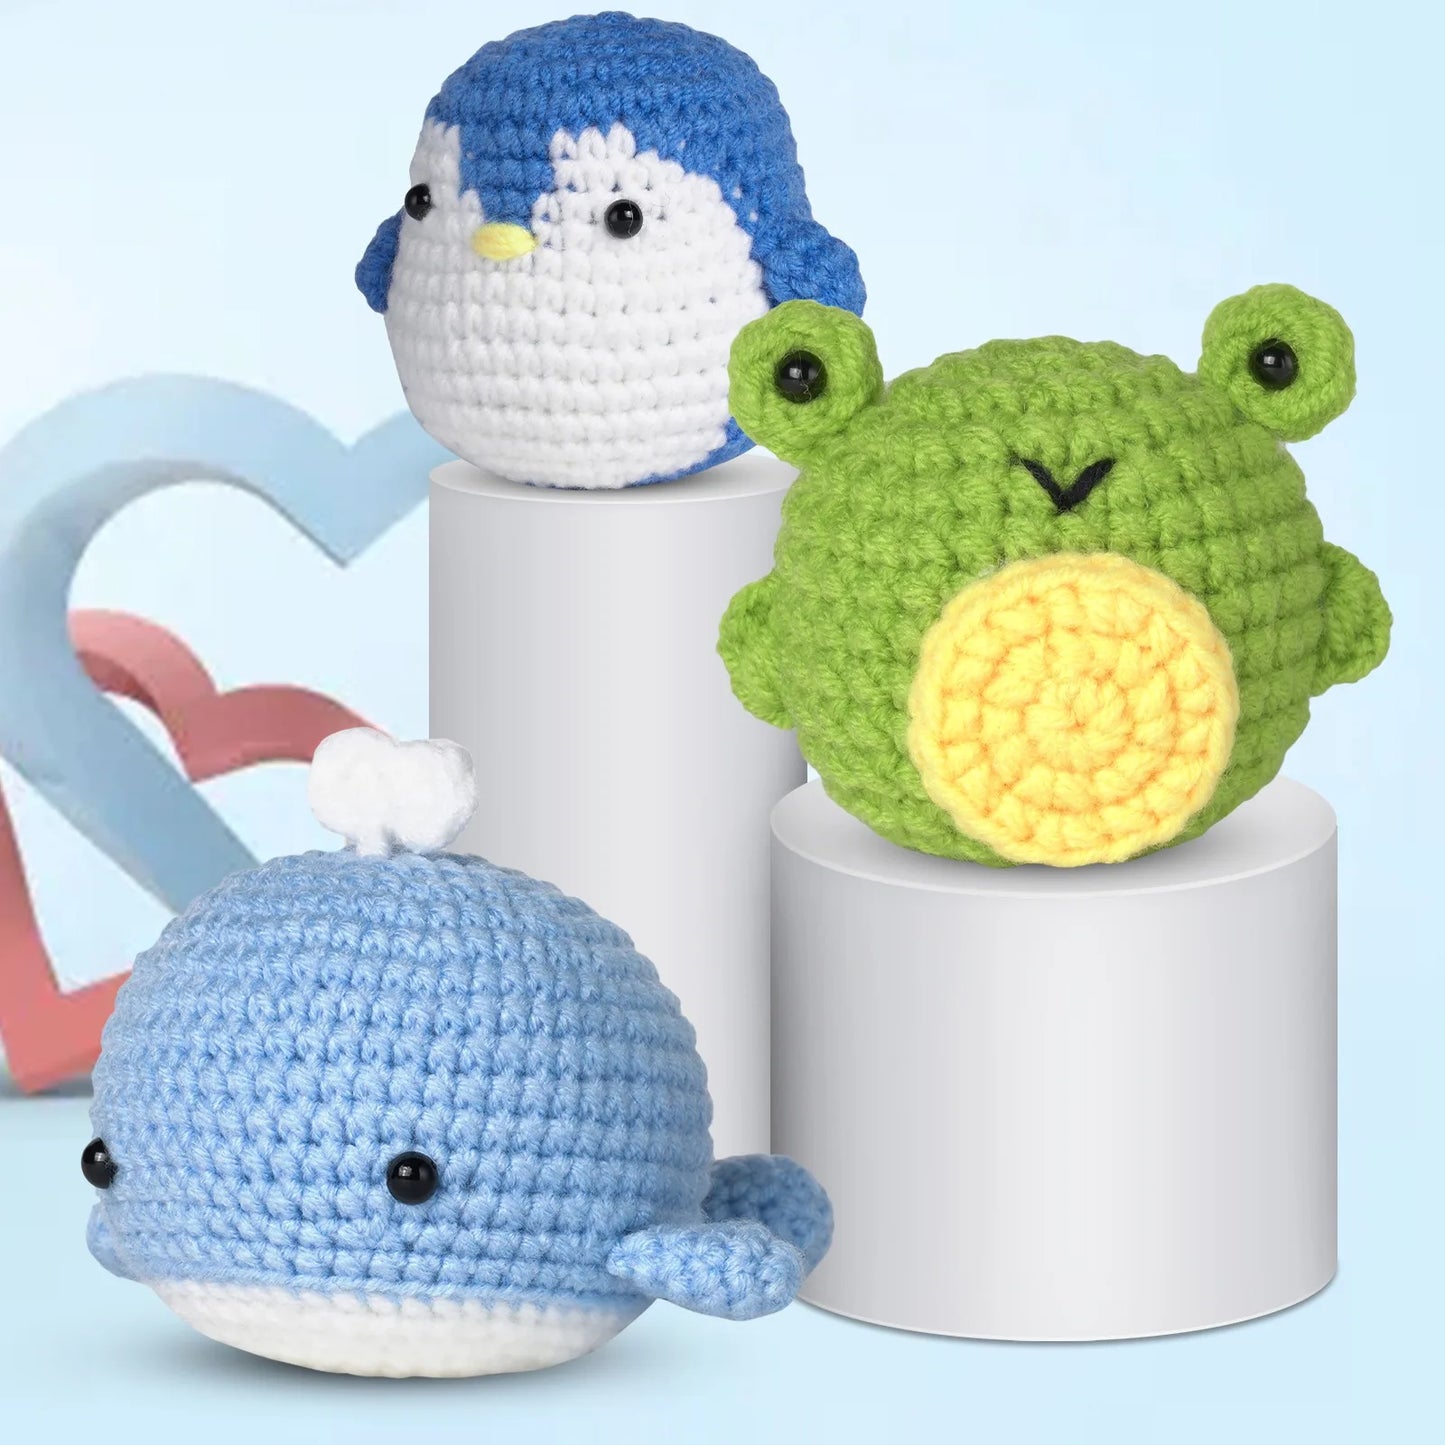 DIY Beginner Crochet Kits - Whale, Penguin & Frog